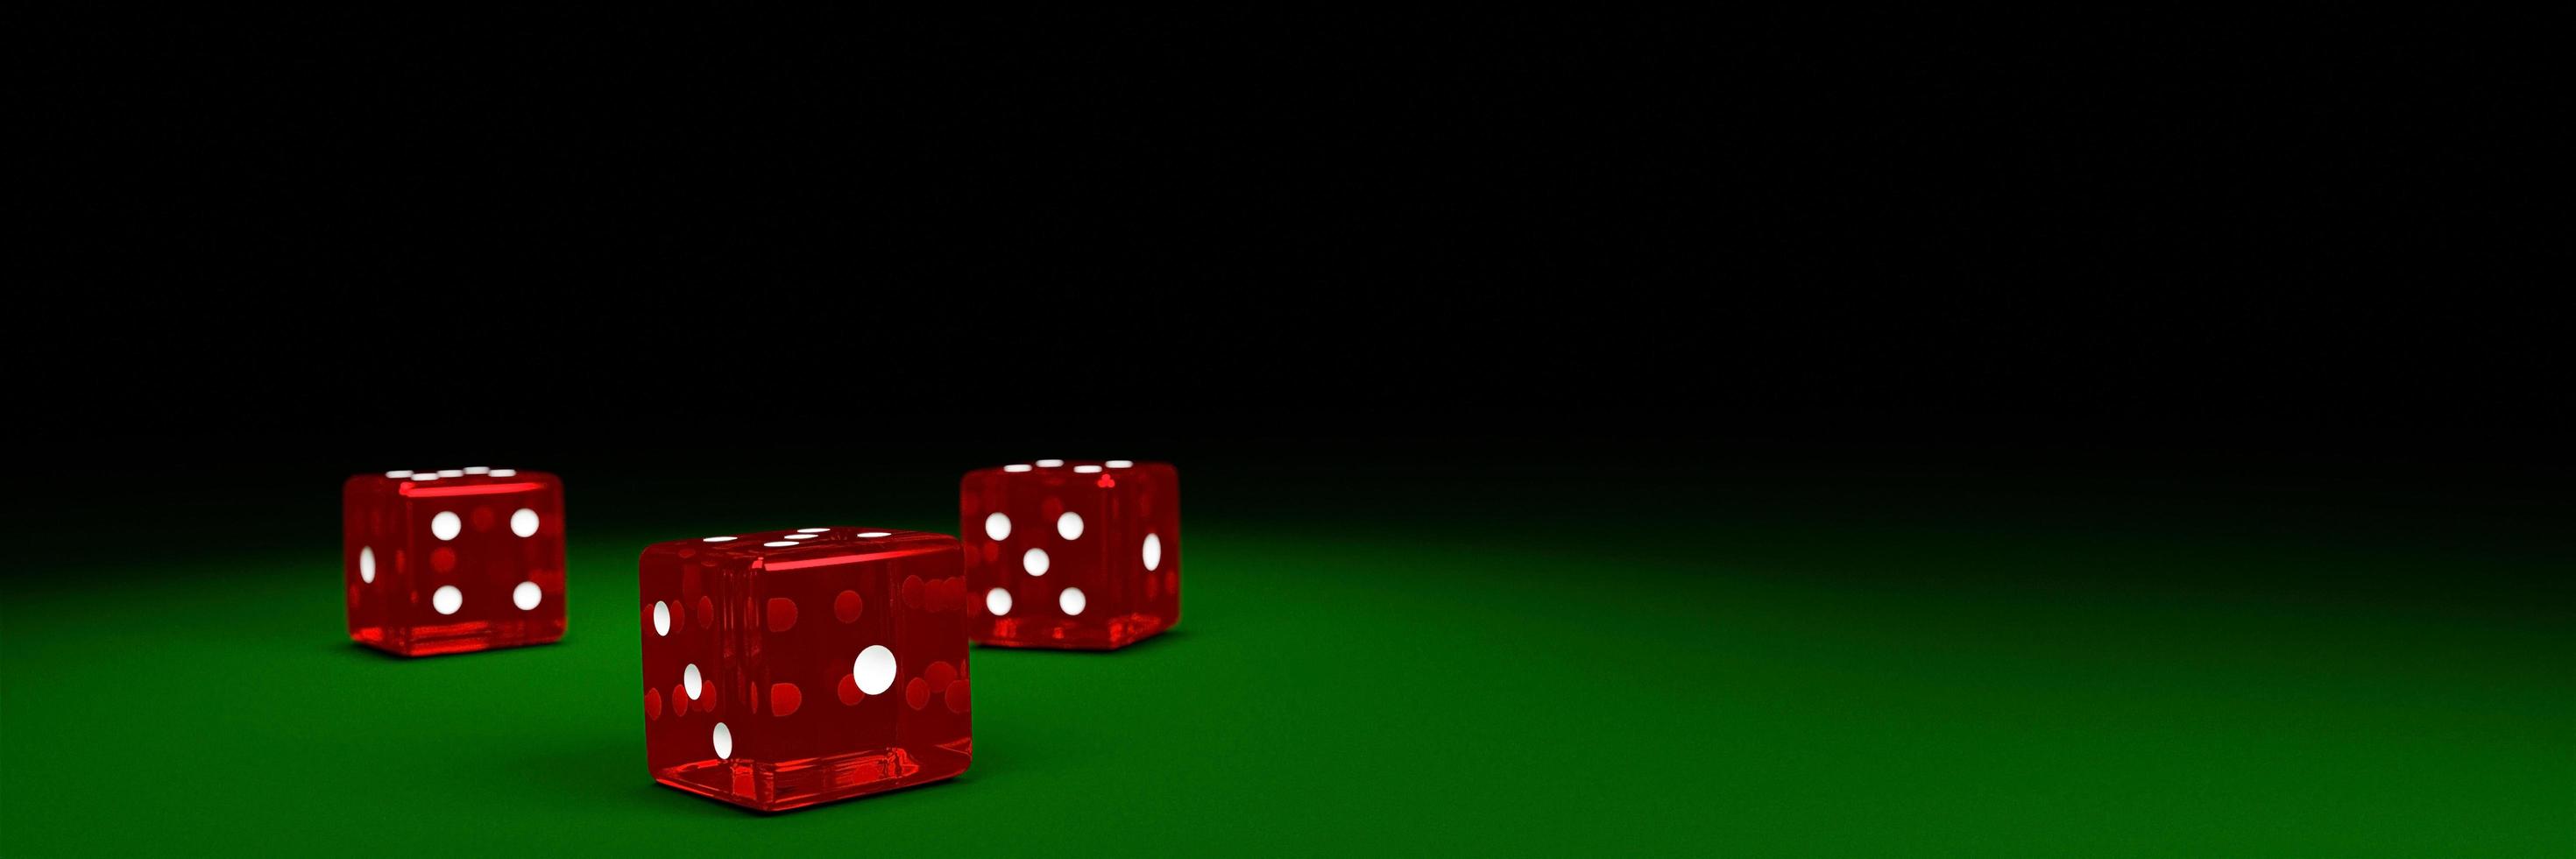 transparante rode dobbelstenen vallen op de groene vilten tafel. het concept van dobbelstenen gokken in casino's. 3D-rendering foto